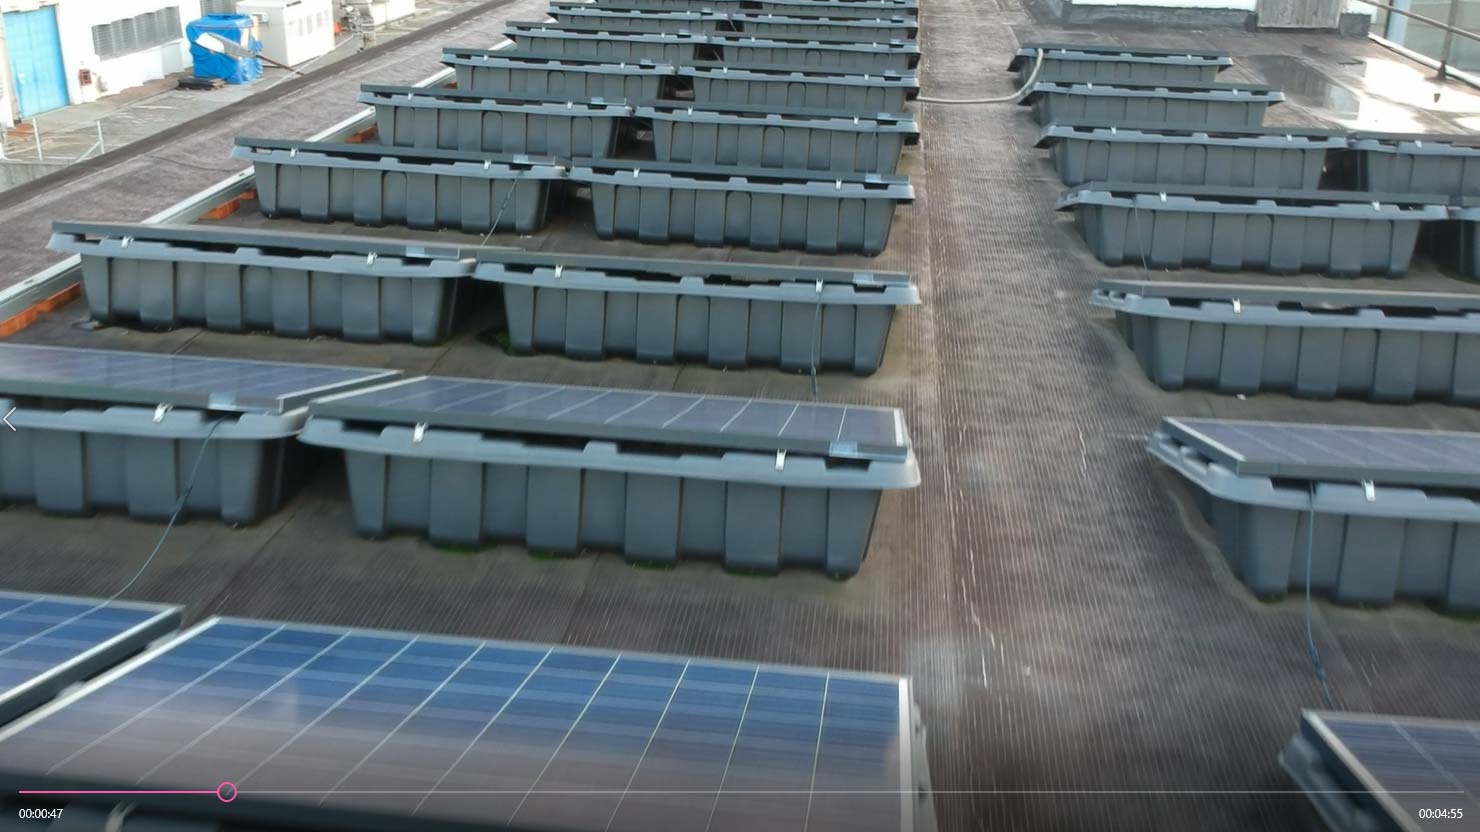 installazione impianto fotovoltaico 20 kW capannone Camera di Commercio La Spezia